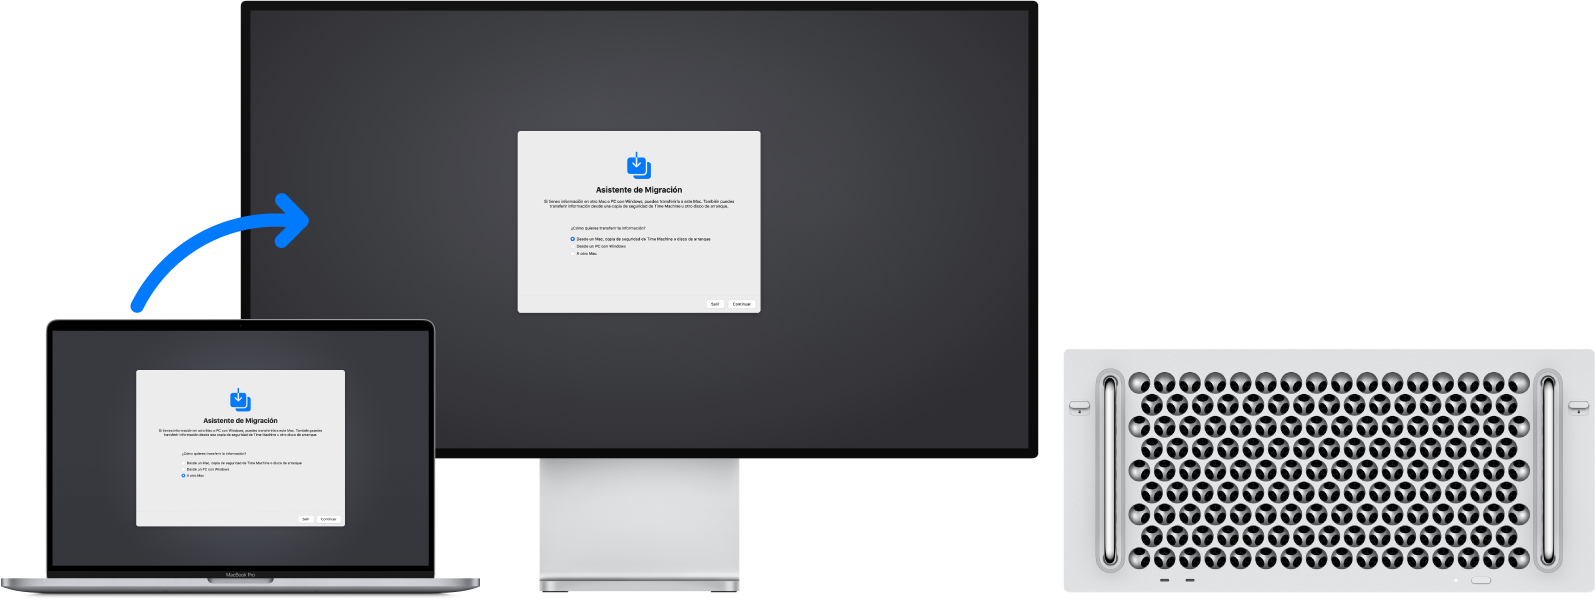 Un MacBook Pro y un Mac Pro con la ventana de Asistente de Migración abierta. Una flecha desde el MacBook Pro al Mac Pro describe la transferencia de los datos de uno al otro.